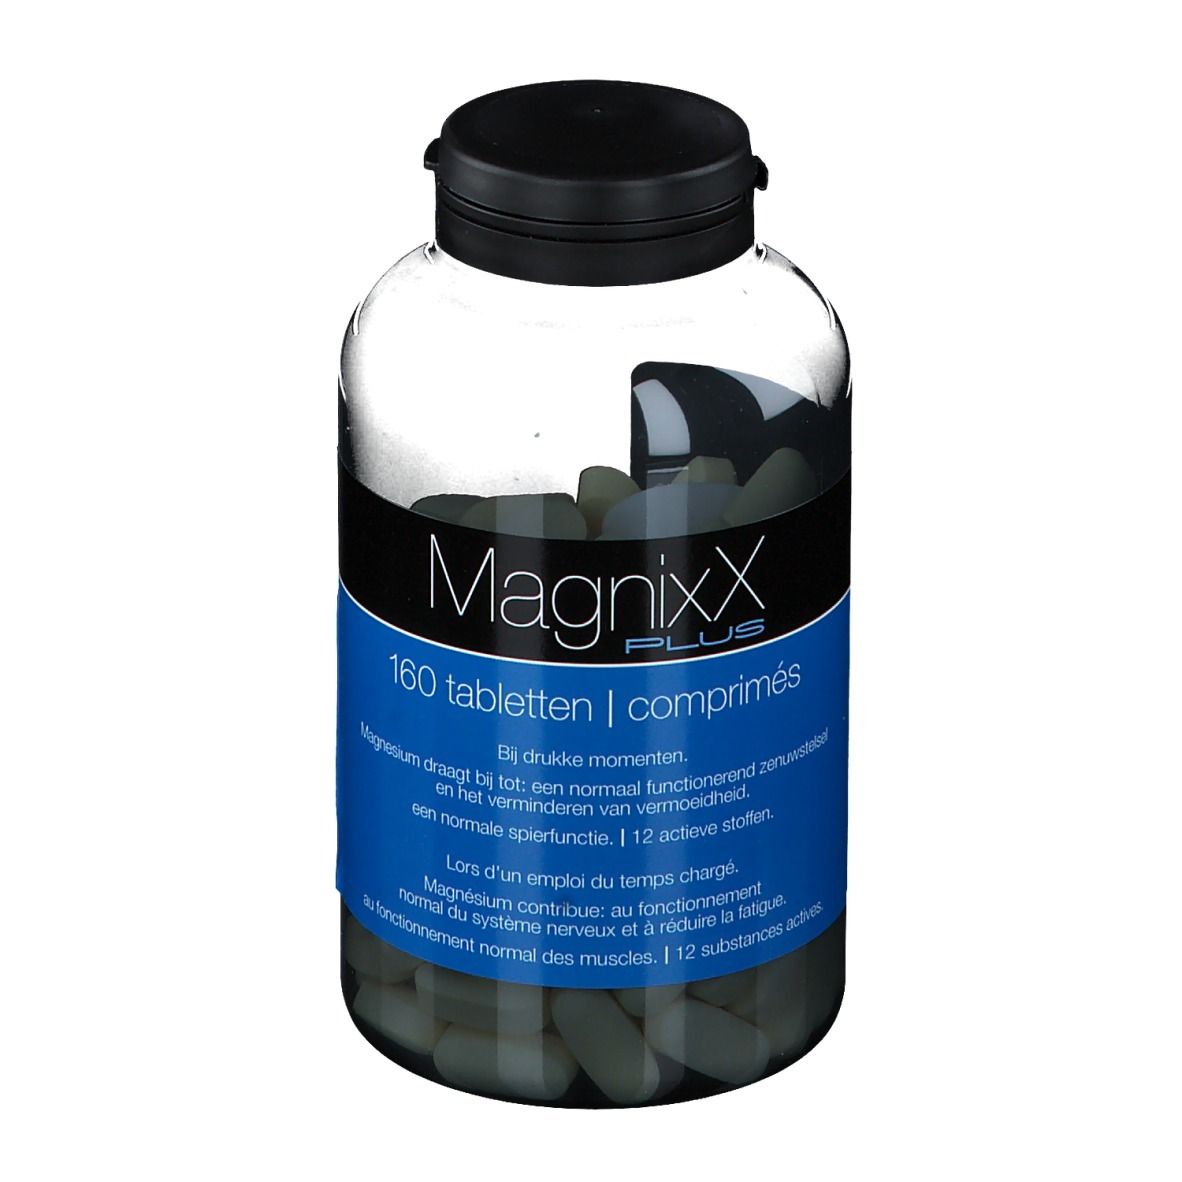 Image of MagnixX Plus